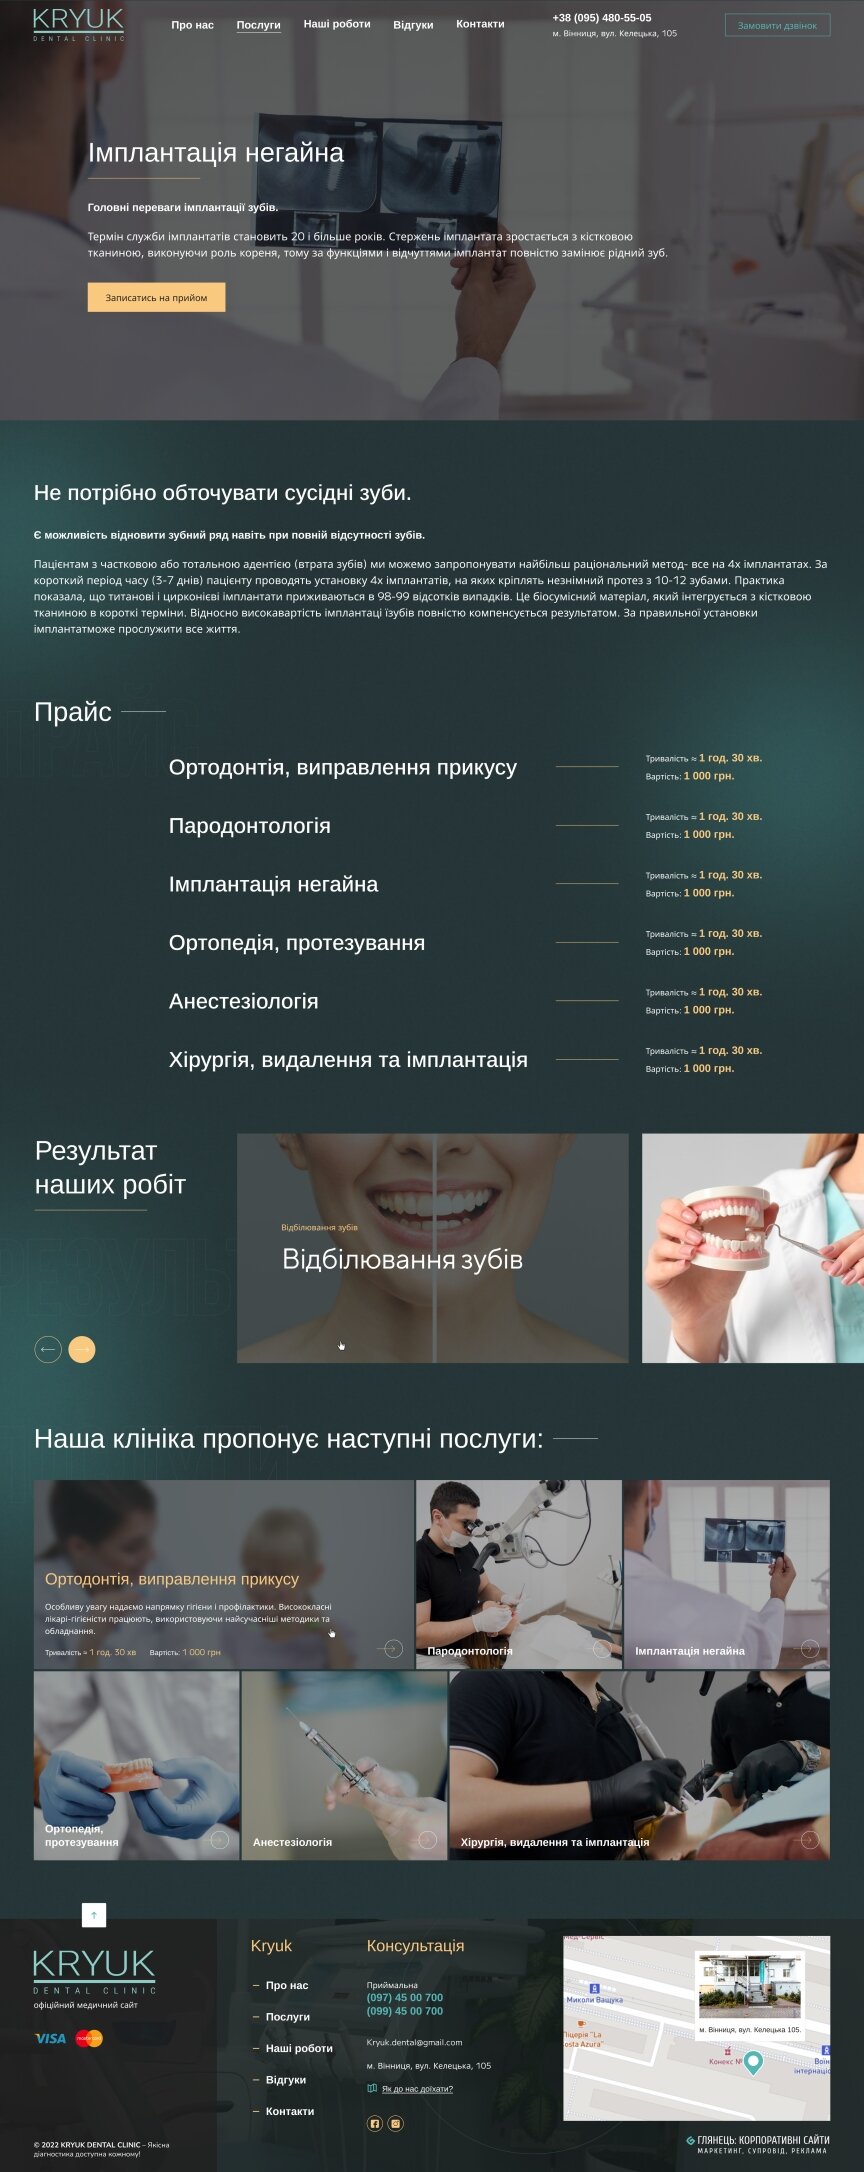 interior page design on the topic Tematyka medyczna — Jednostronicowa witryna kliniki stomatologicznej Kryuk Dental 1